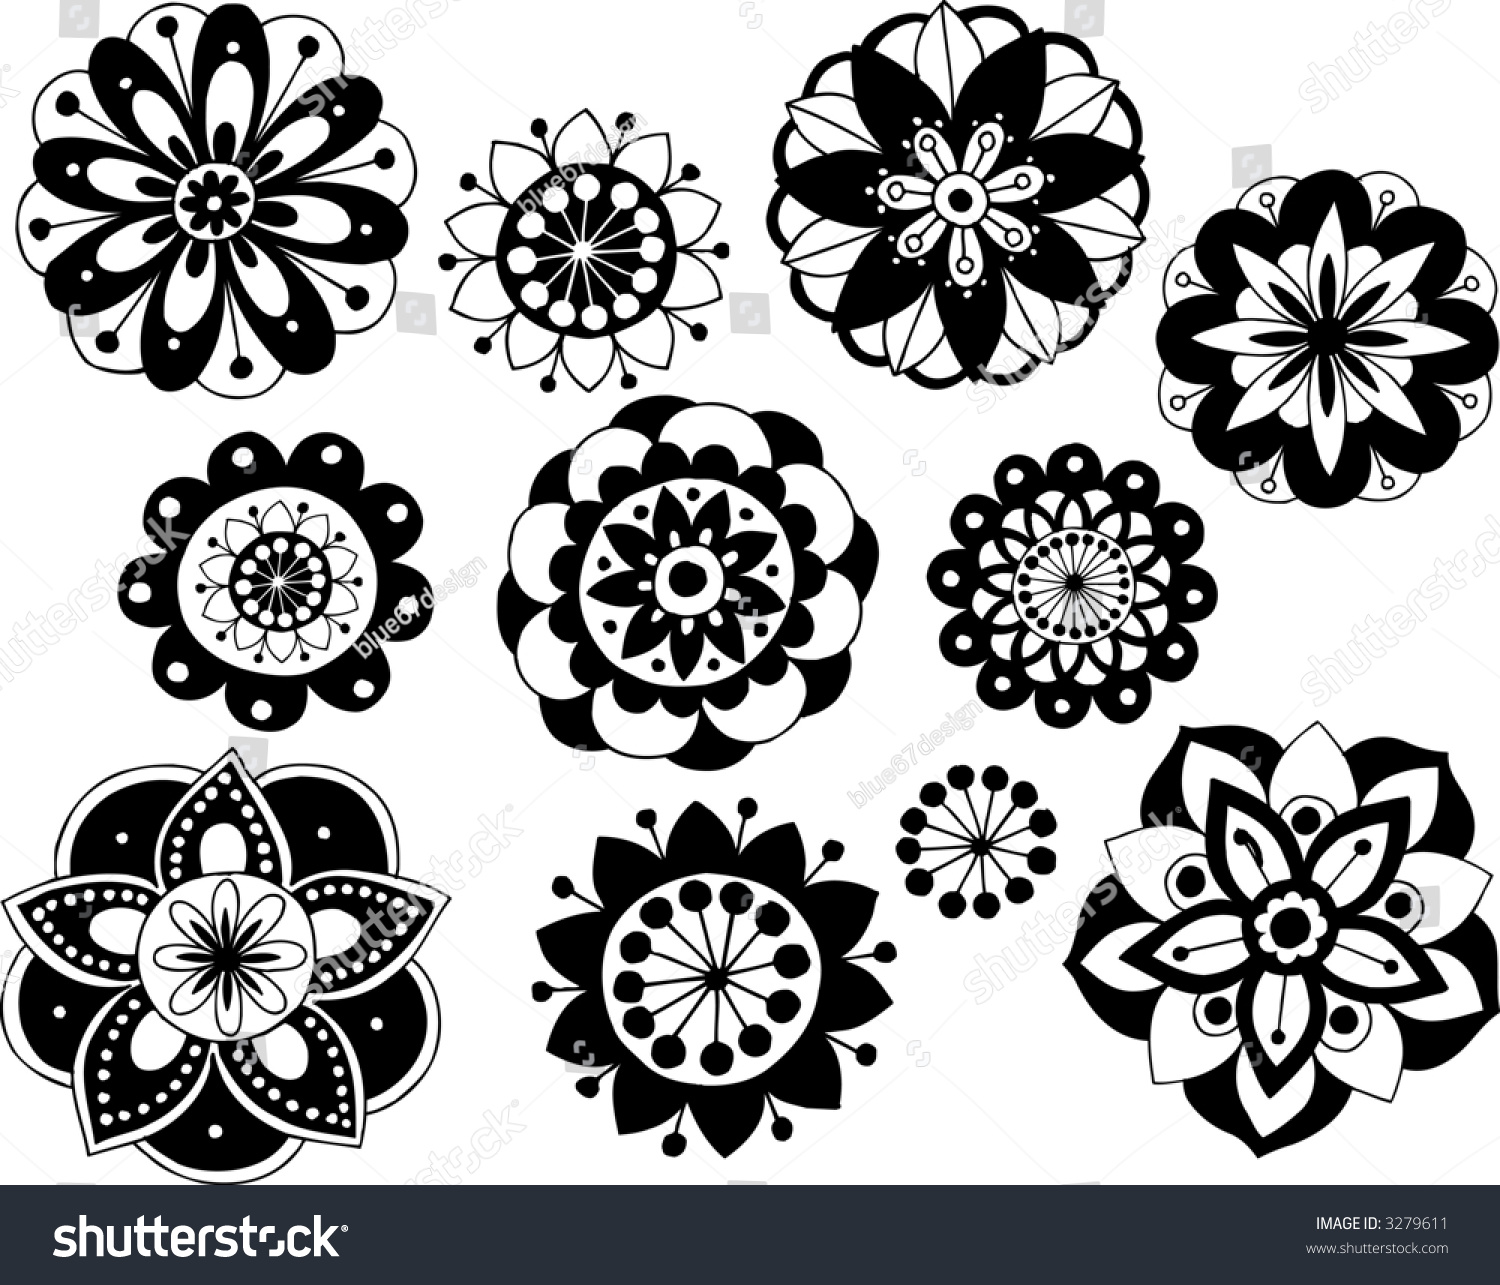 Black And White Vector Flowers Illustration - 3279611 : Shutterstock